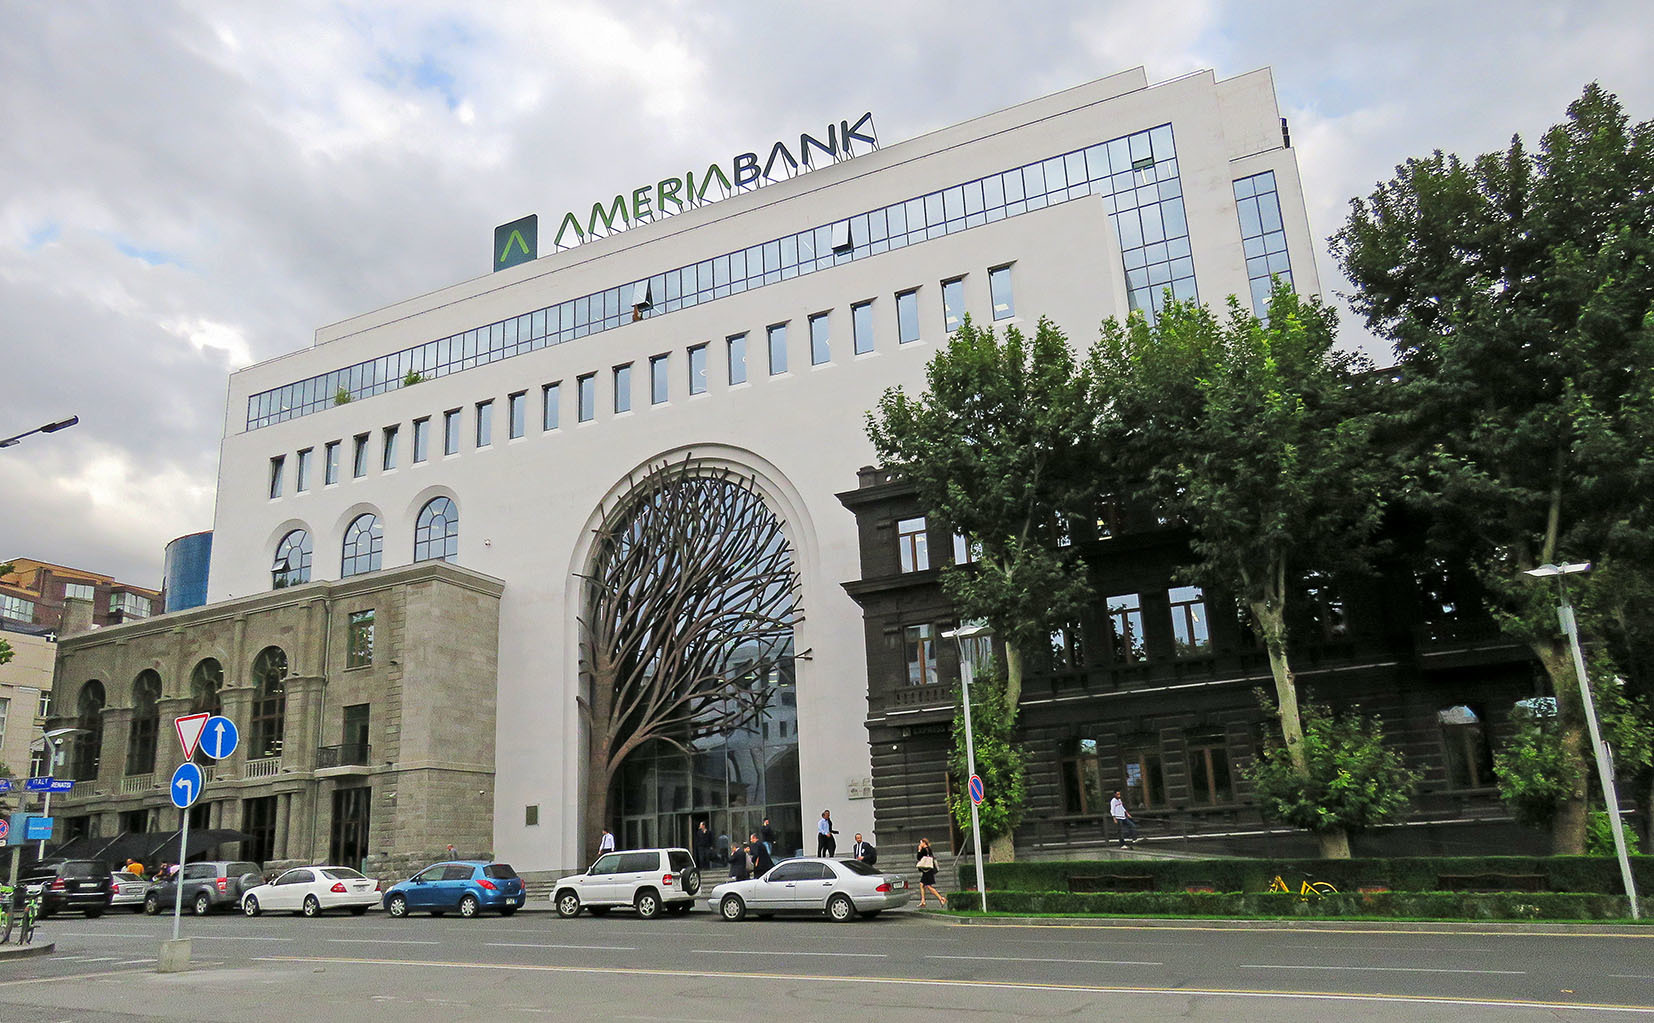 Бизнес в ереване. Америя банк Ереван дерево. Ереван здания. Здание в центре Еревана. Ameria Bank центральное отделение Ереван.